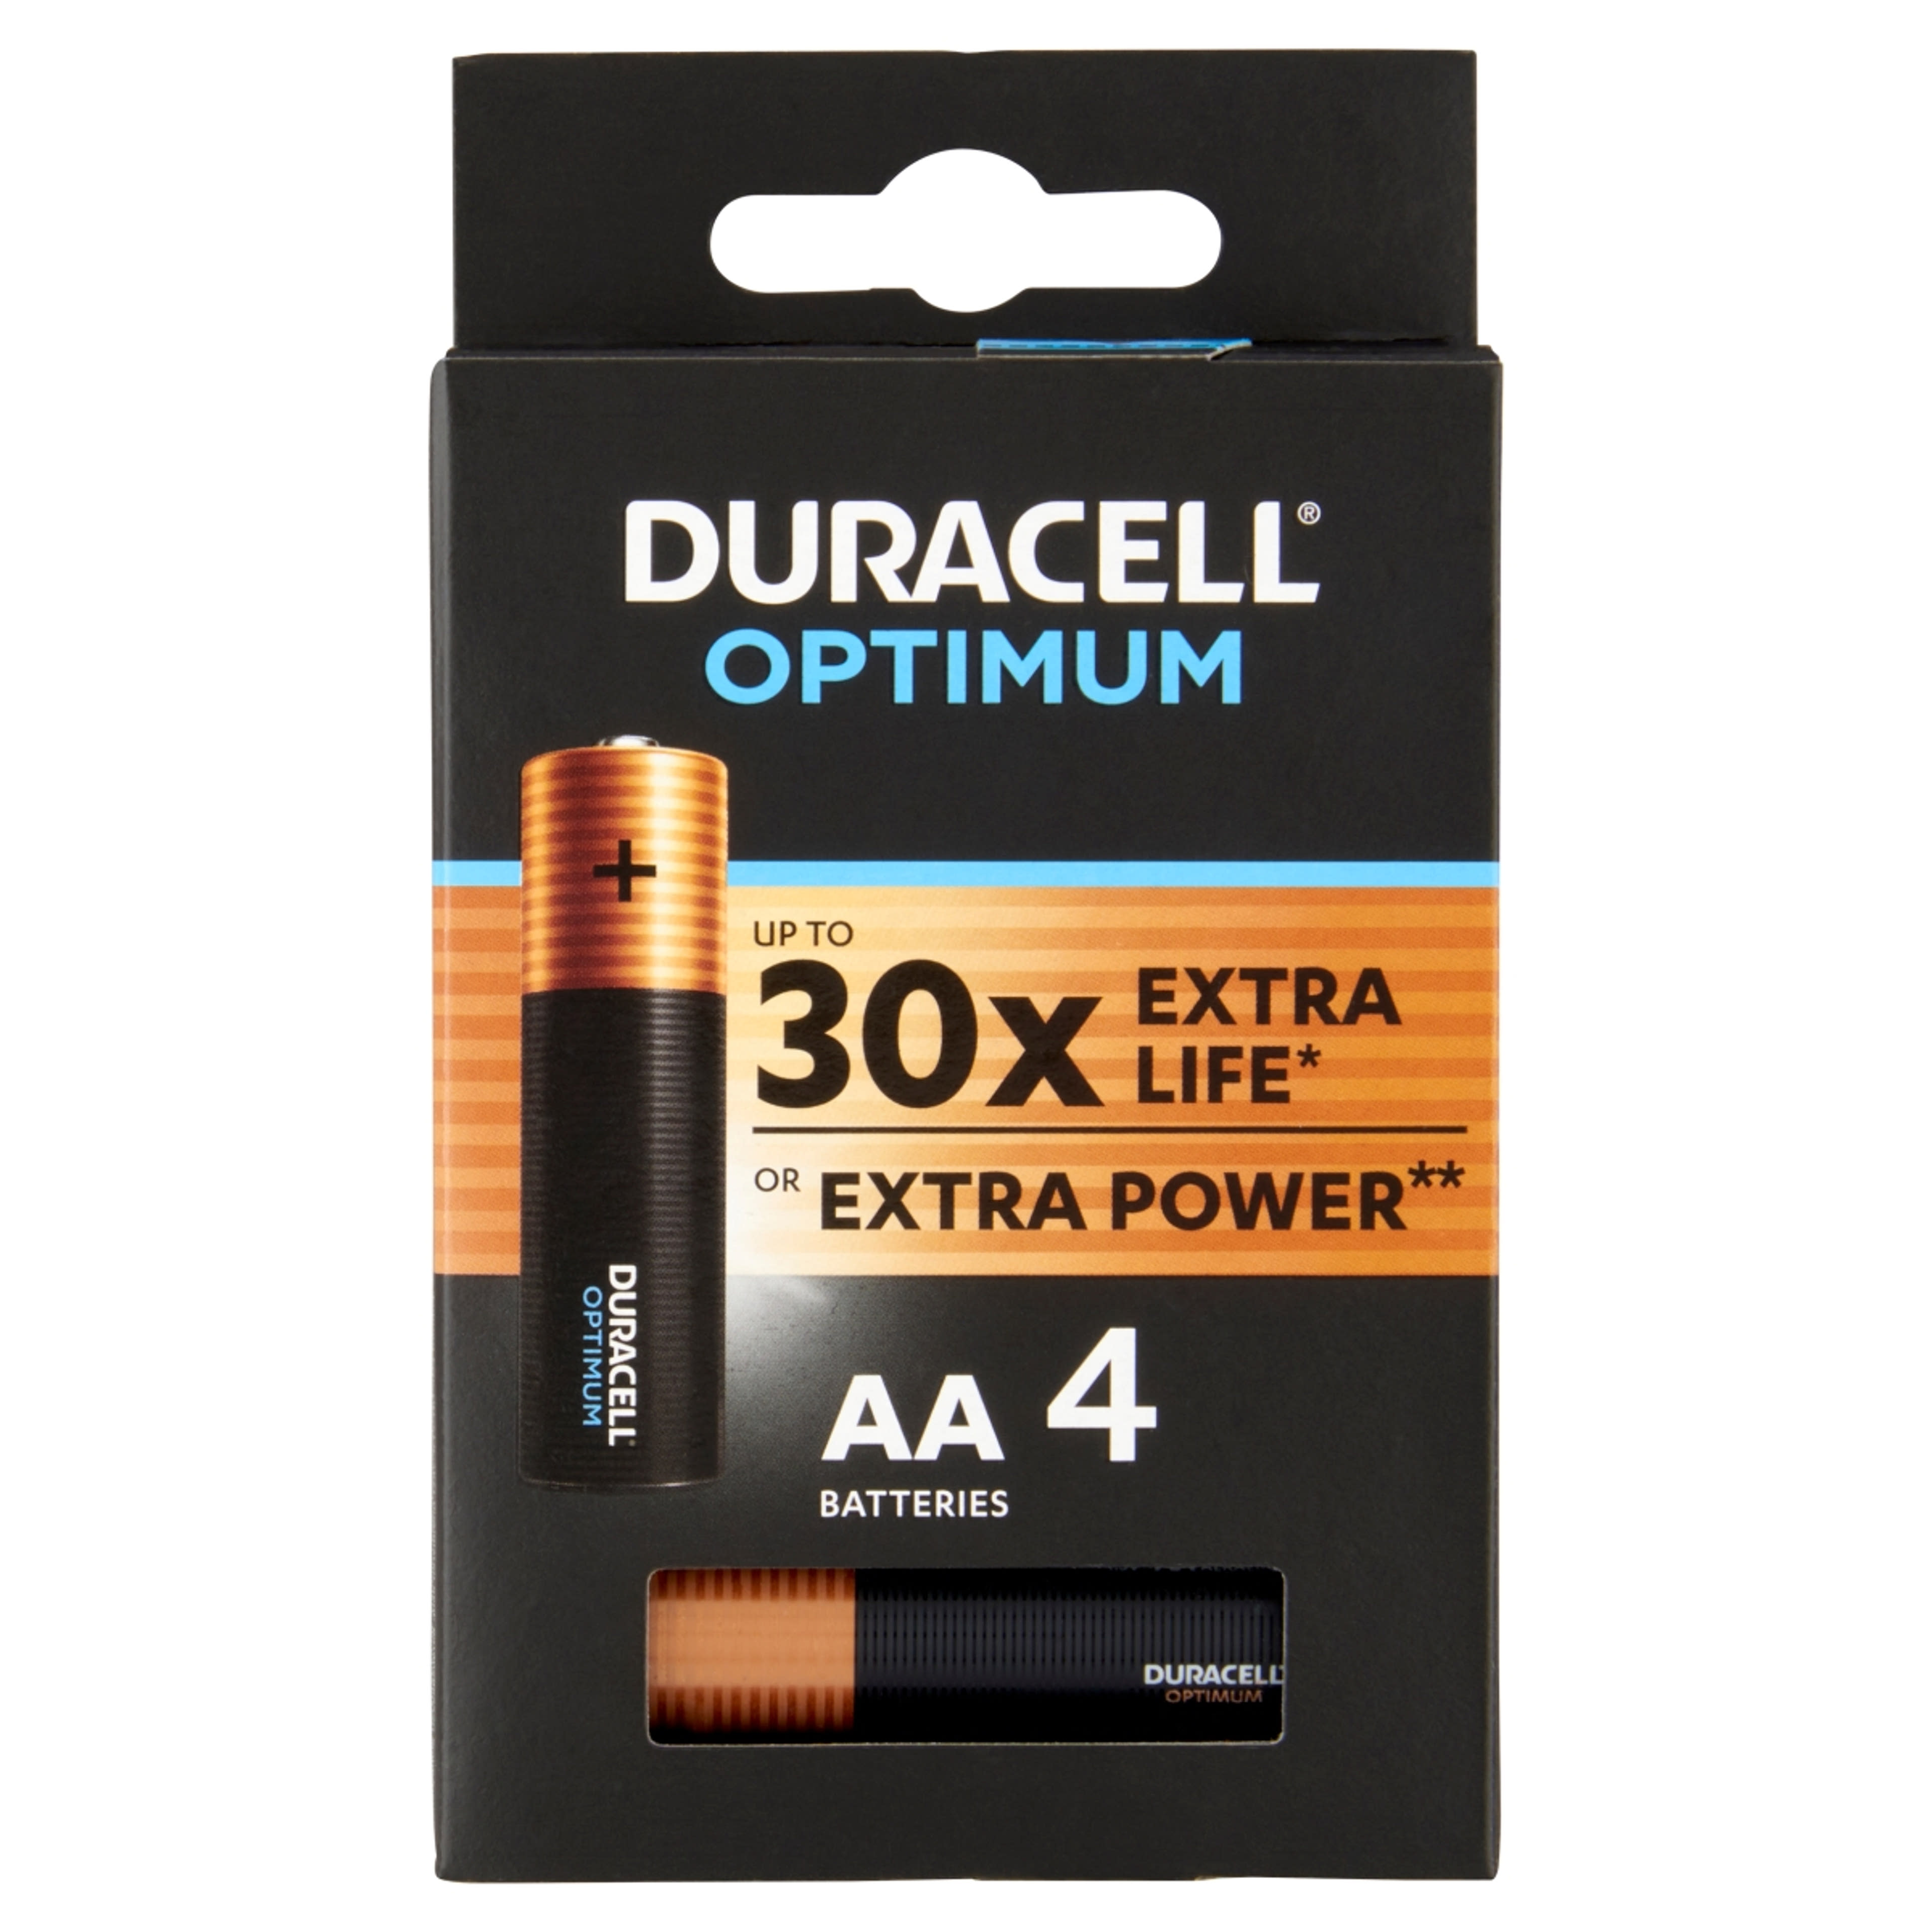 Duracell Optimum Extra Power MX 1500 AA 1,5 V alkáli elem - 4 db